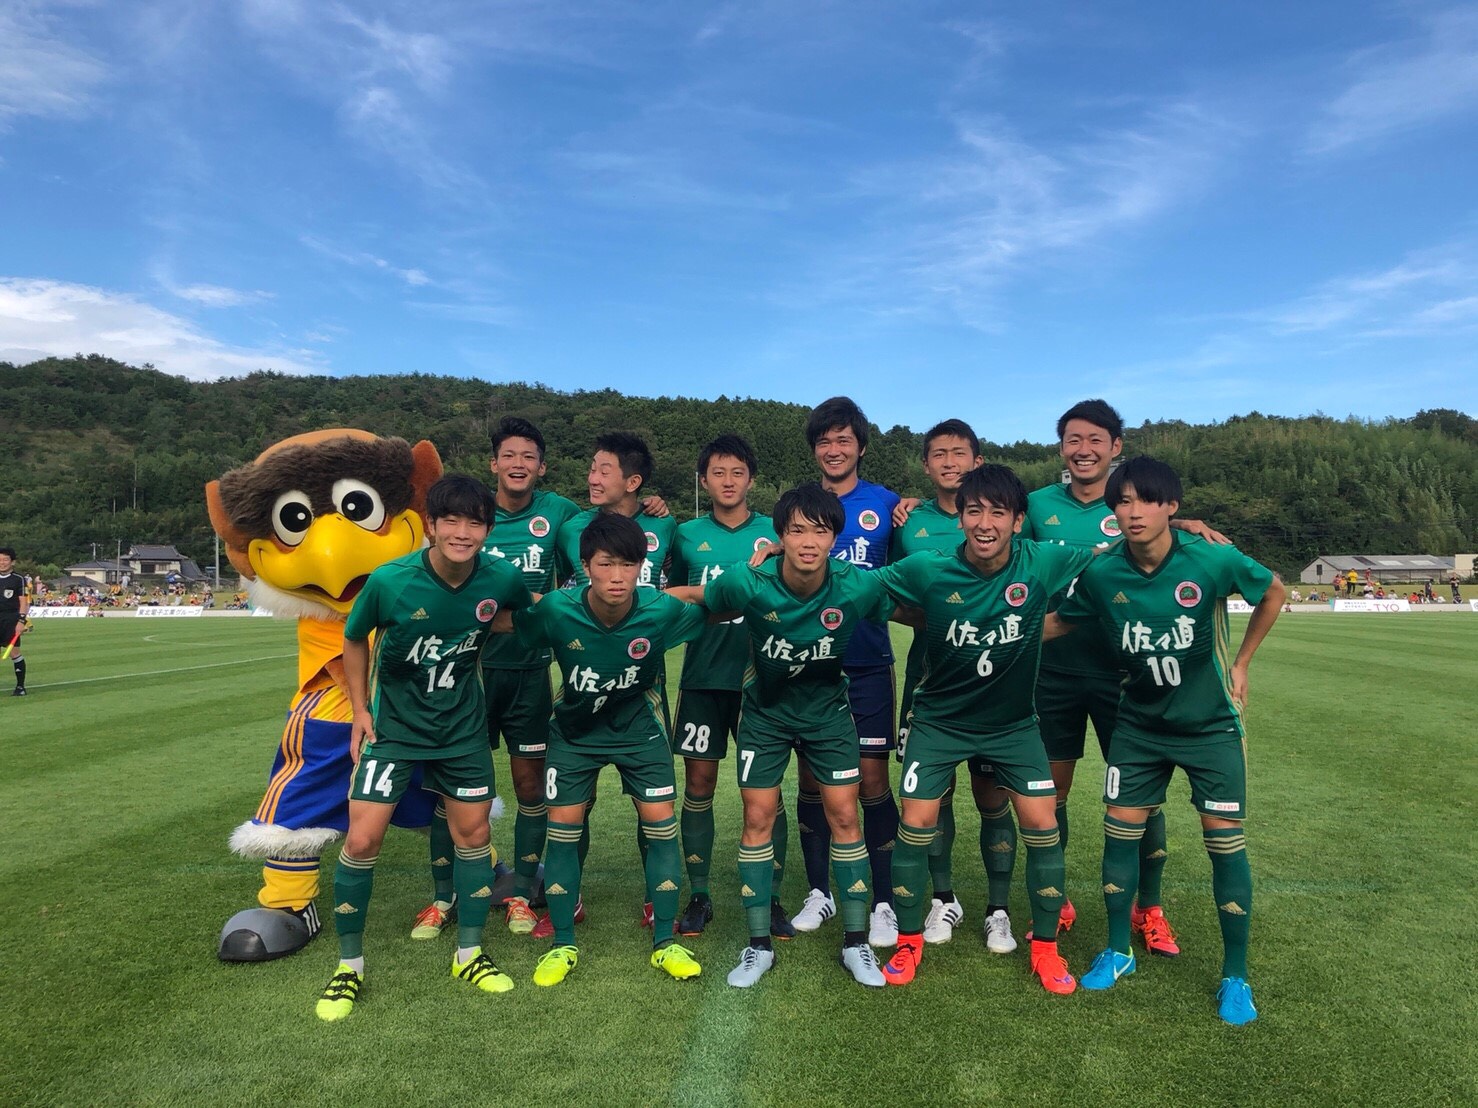 男子サッカー部 18復興支援試合 石巻 仙台大学